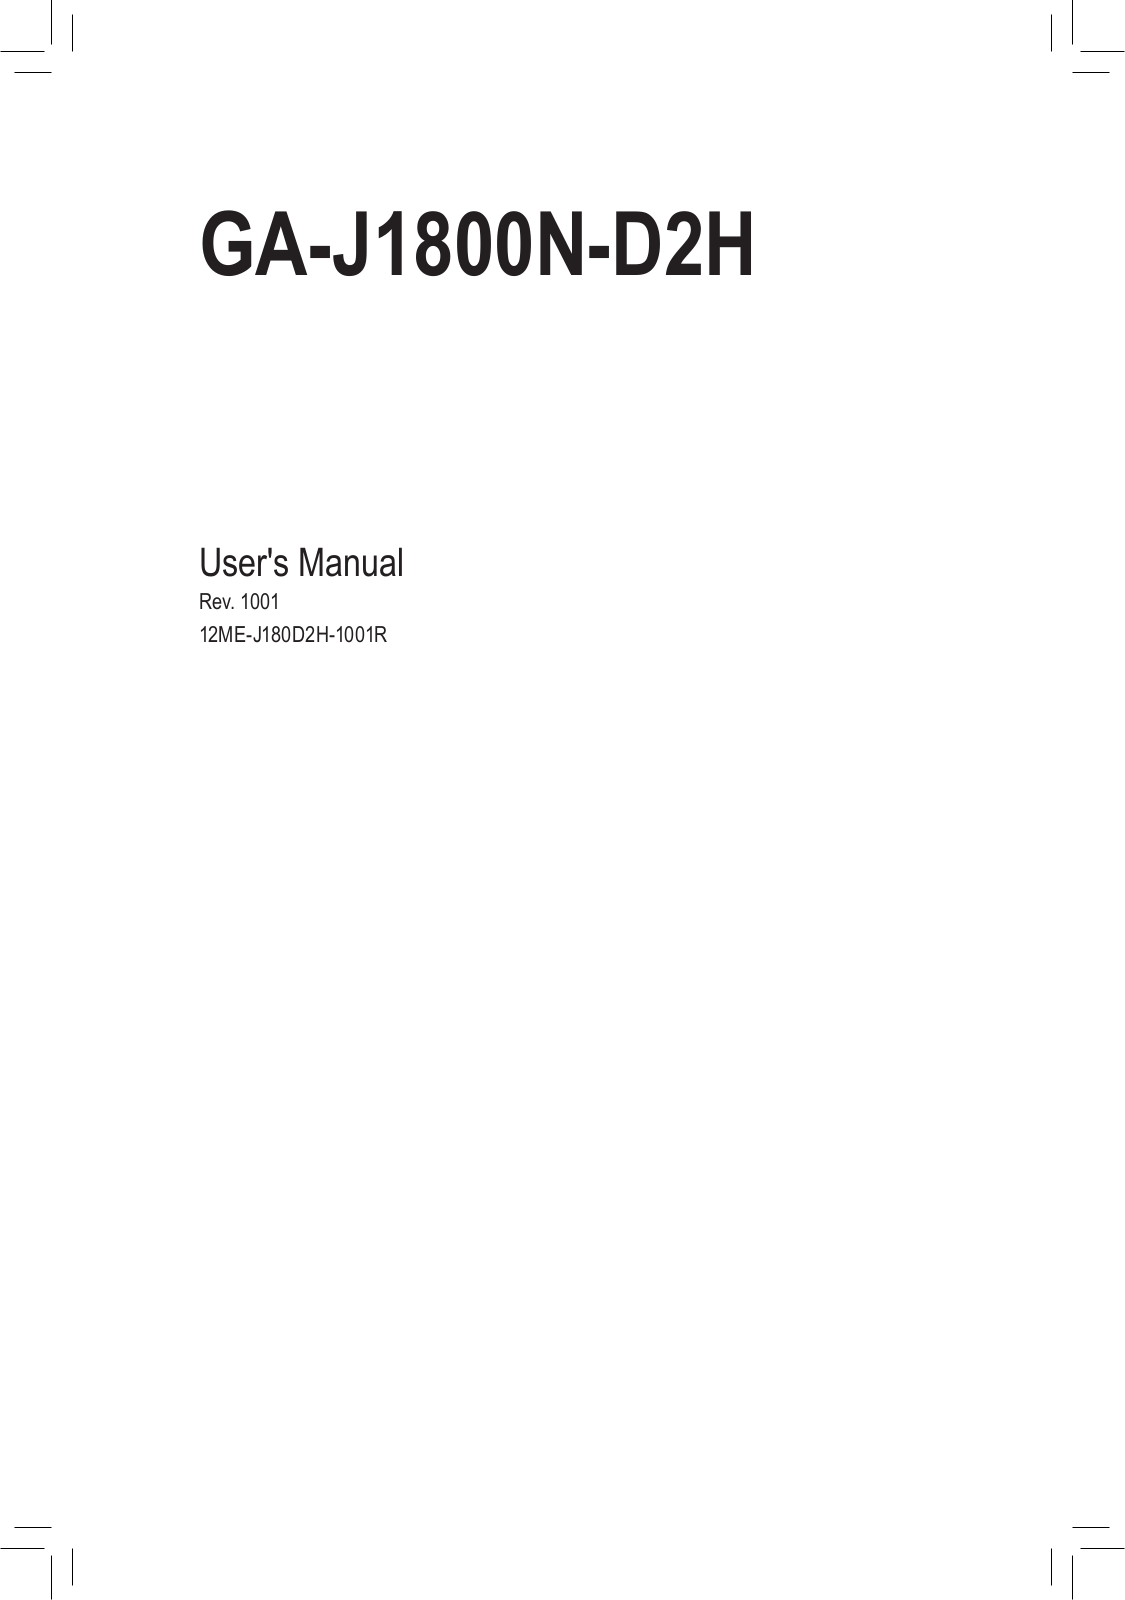 Gigabyte GA-J1800N-D2H User Manual